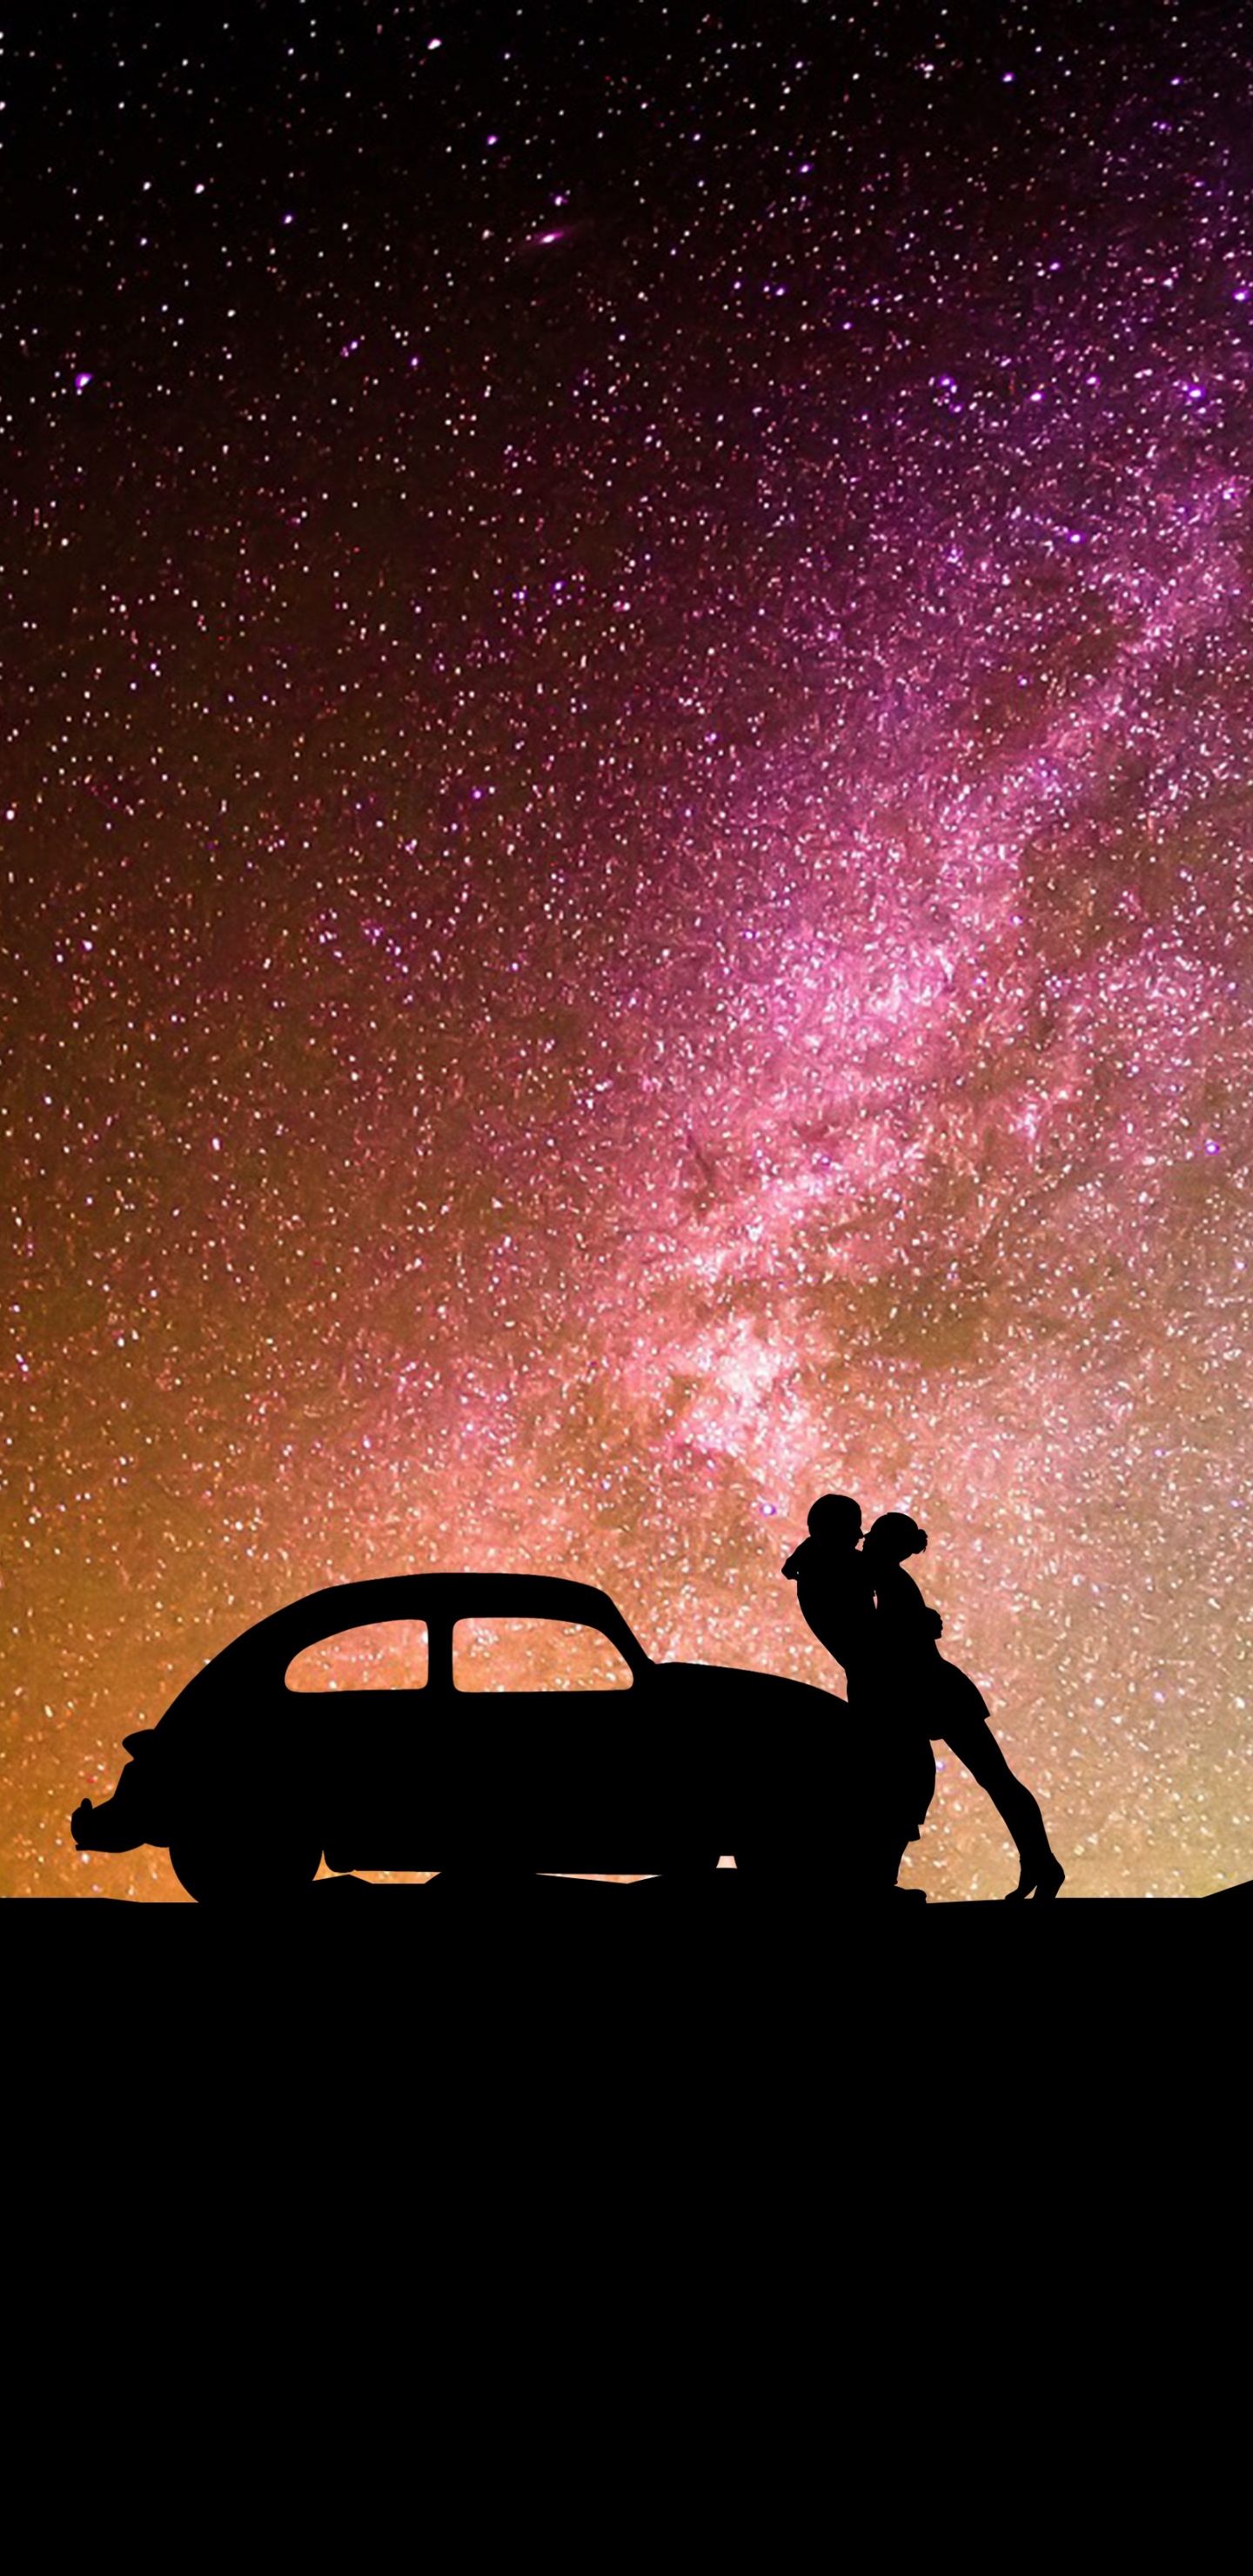 Spotify, Objeto Astronómico, la Astronomía, Estrella, Espacio. Wallpaper in 1440x2960 Resolution